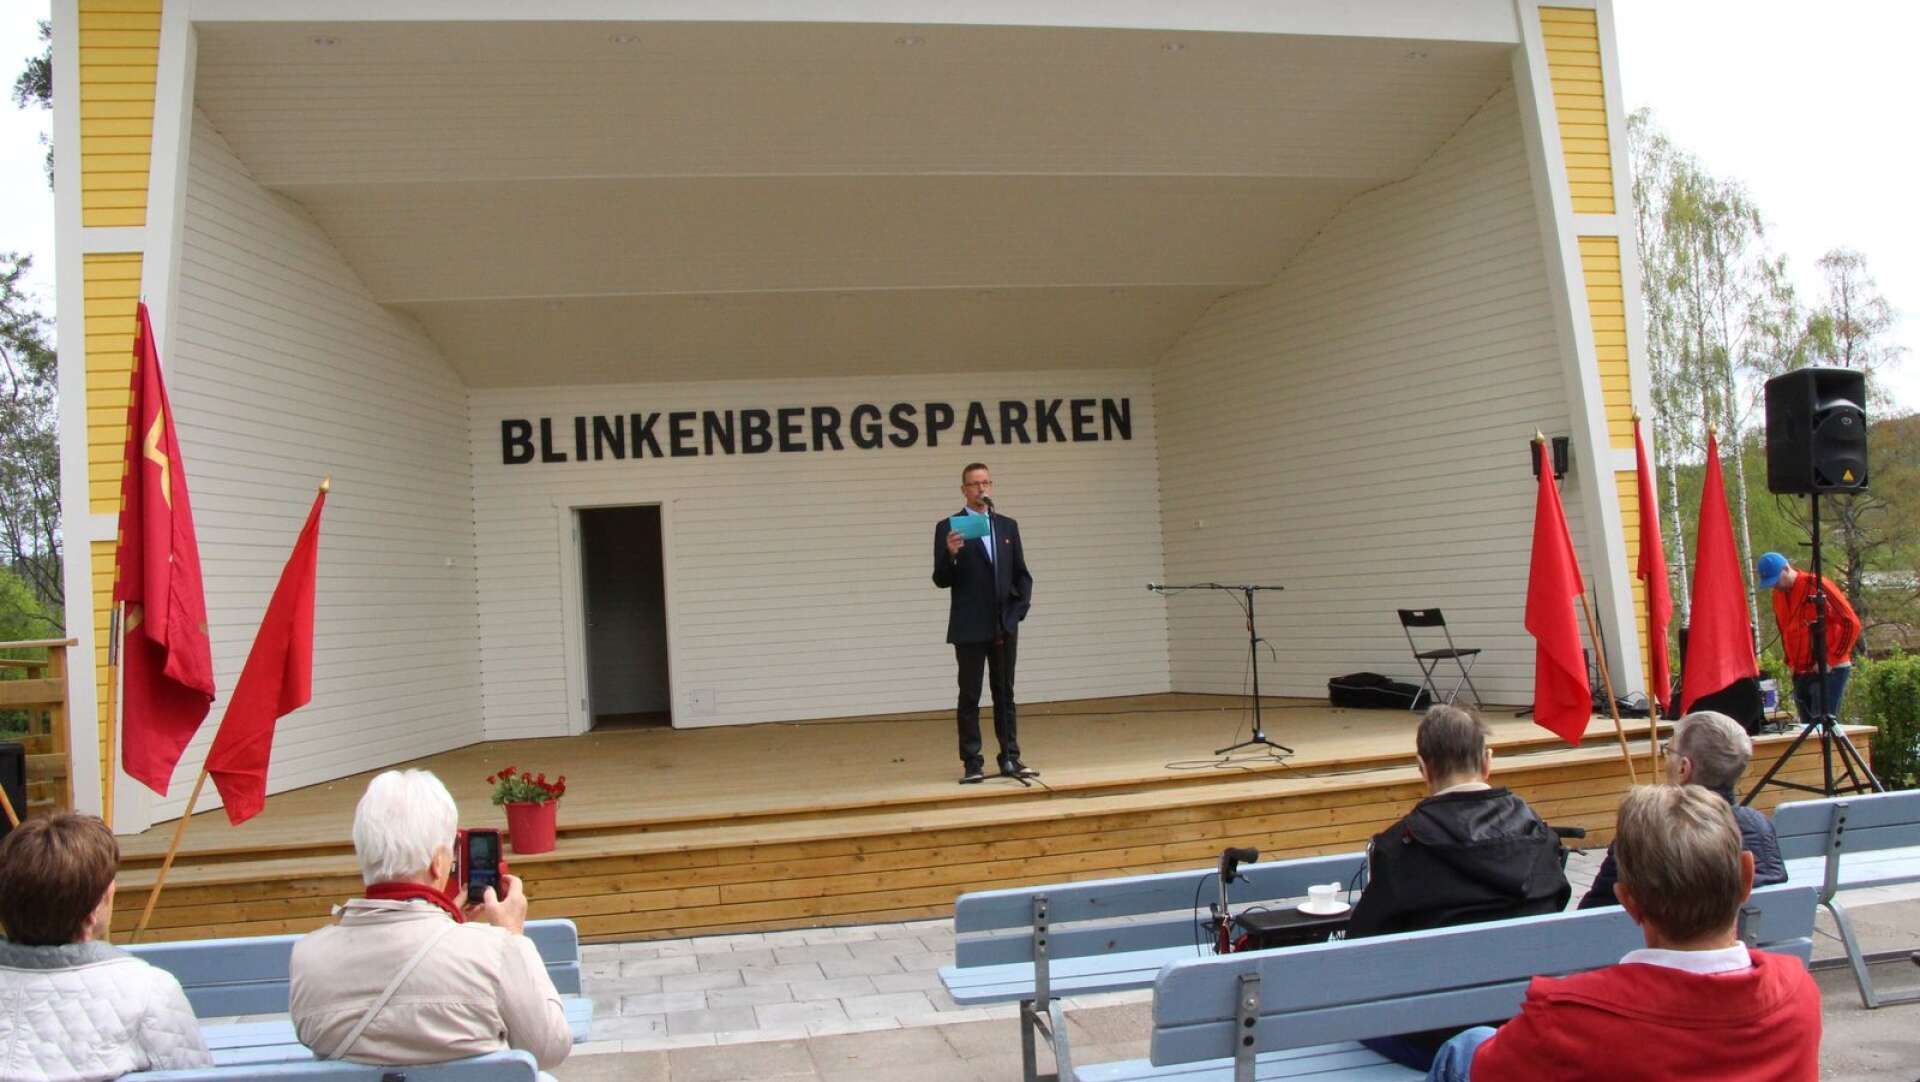 Oppositionsrådet Tomas Pettersson talade vid första majfirandet i Blinkenbergsparken